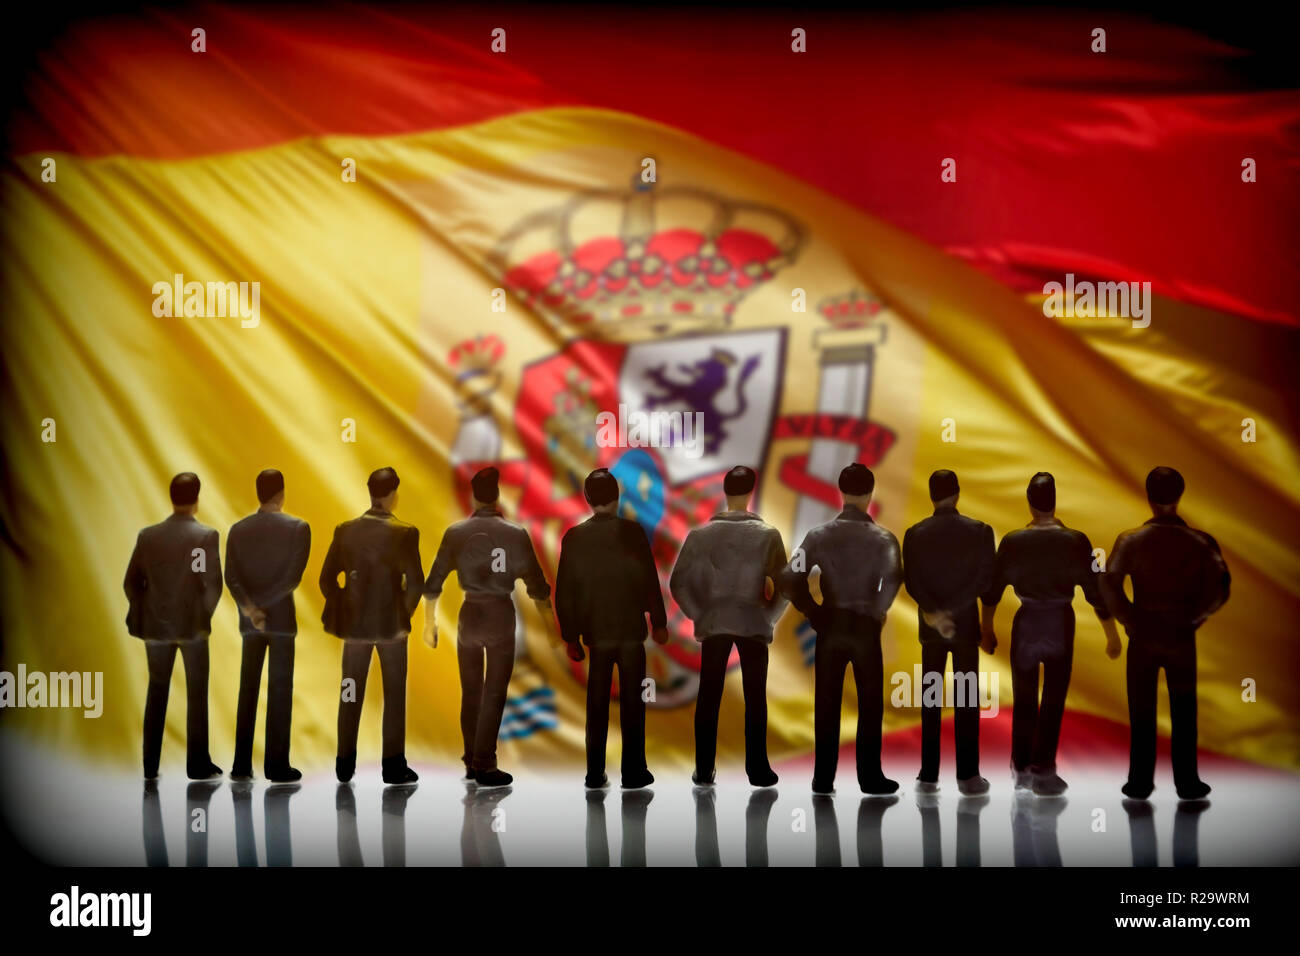 Silhouette de plusieurs hommes devant le drapeau espagnol, conceptual image Banque D'Images